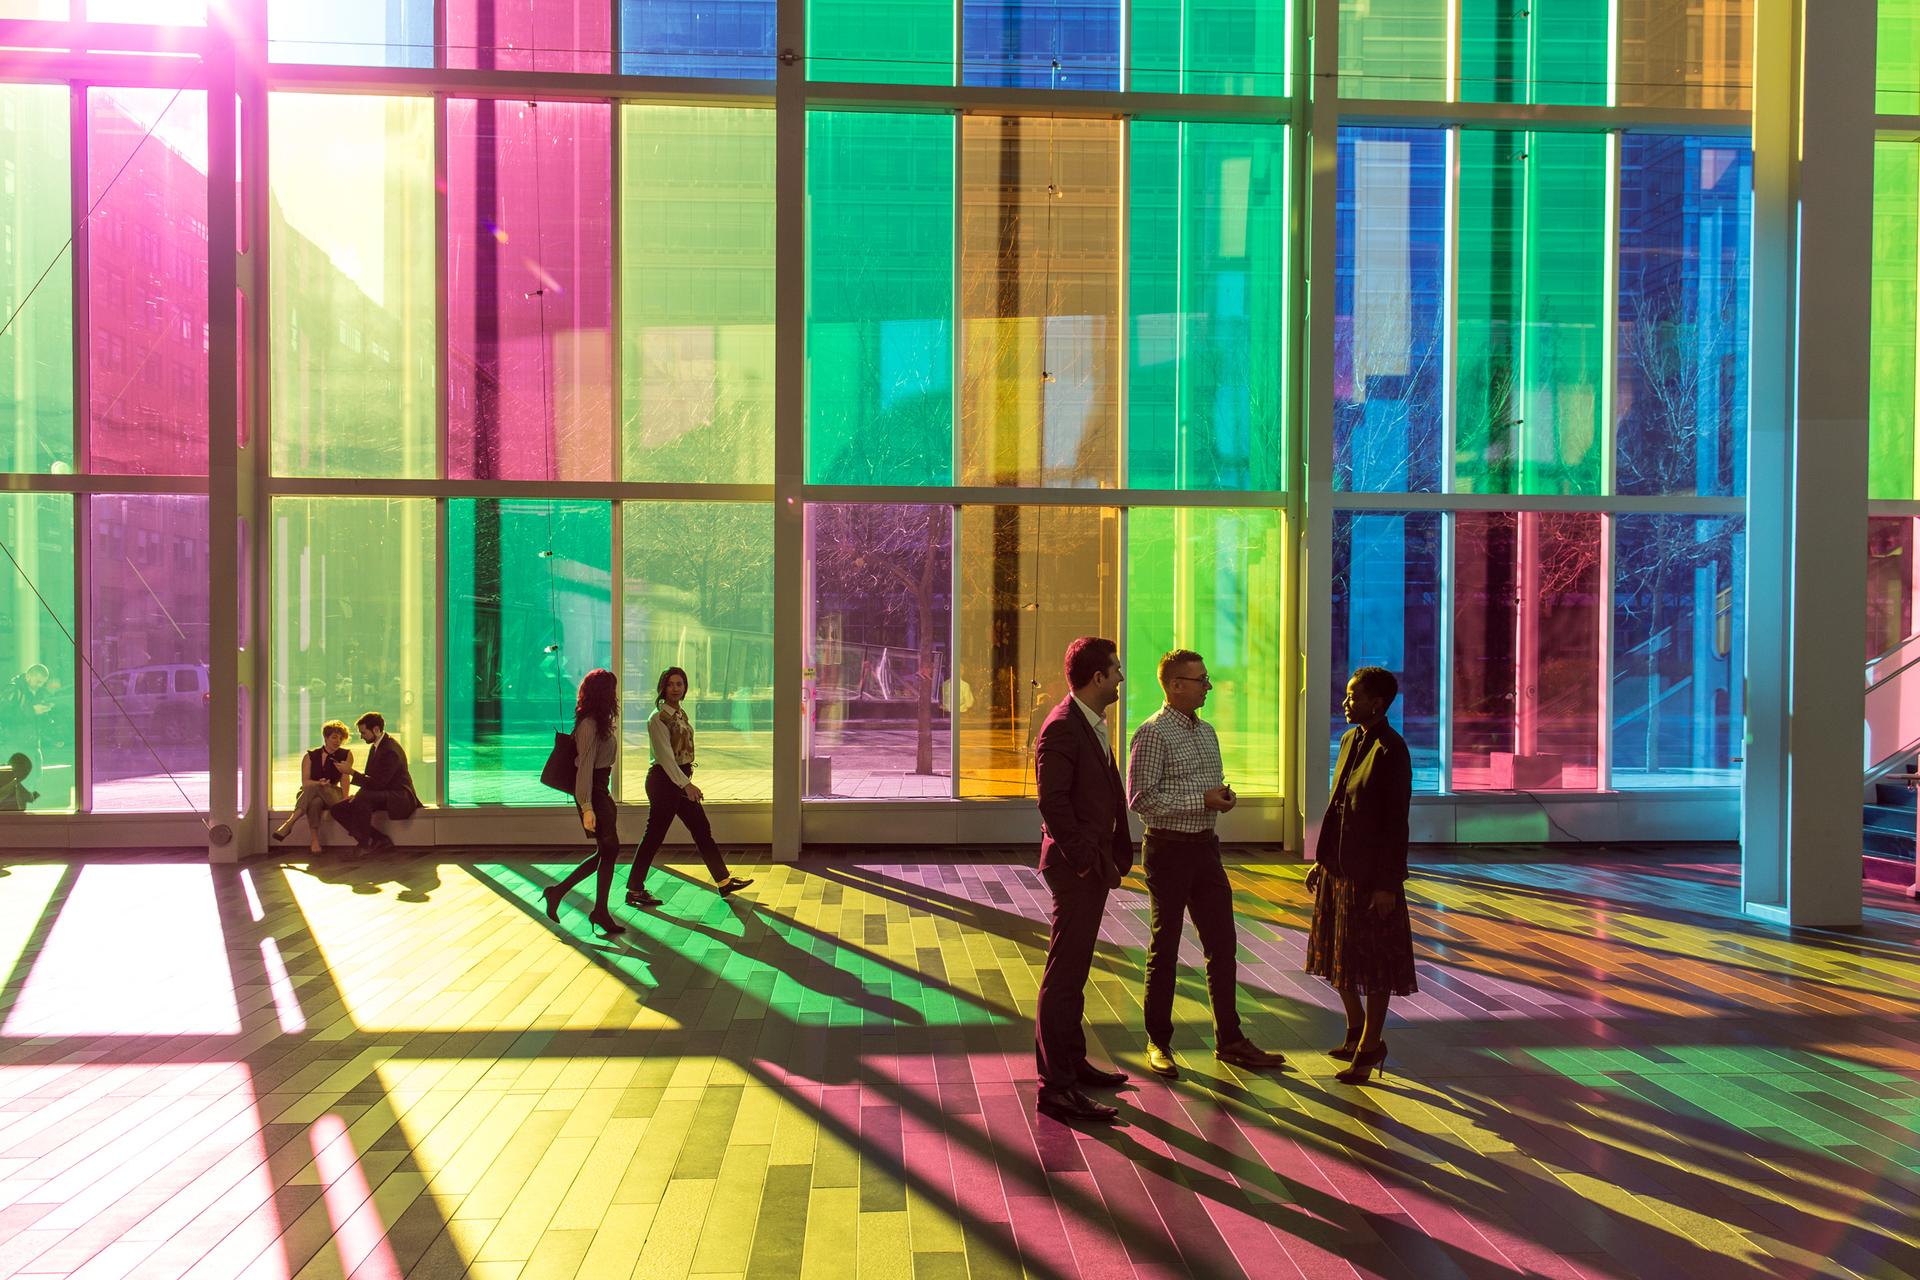 Des groupes de gens se trouvent dans un large couloir où la lumière filtre à travers des panneaux de verre coloré.